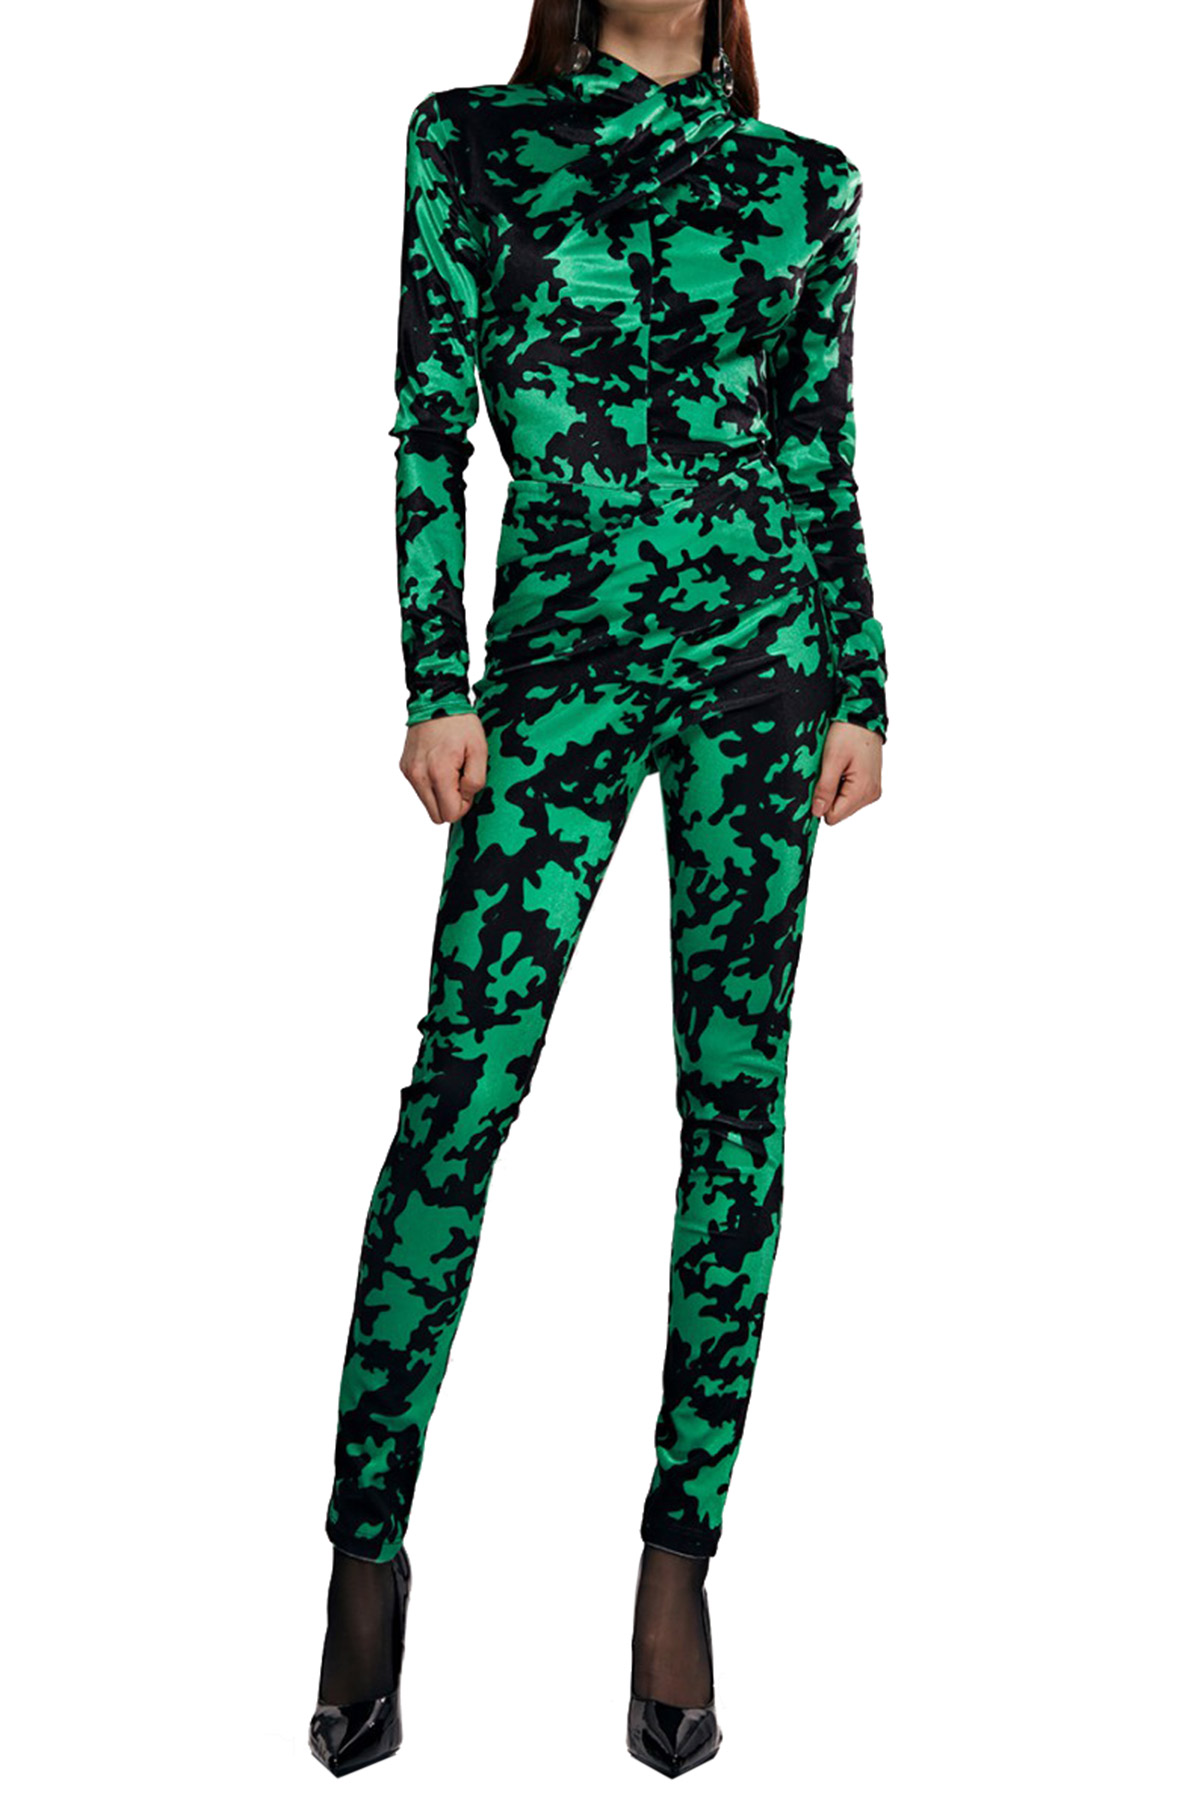 Pantalone donna leggings in ciniglia vita alta in fantasia camouflage tessuto elastico